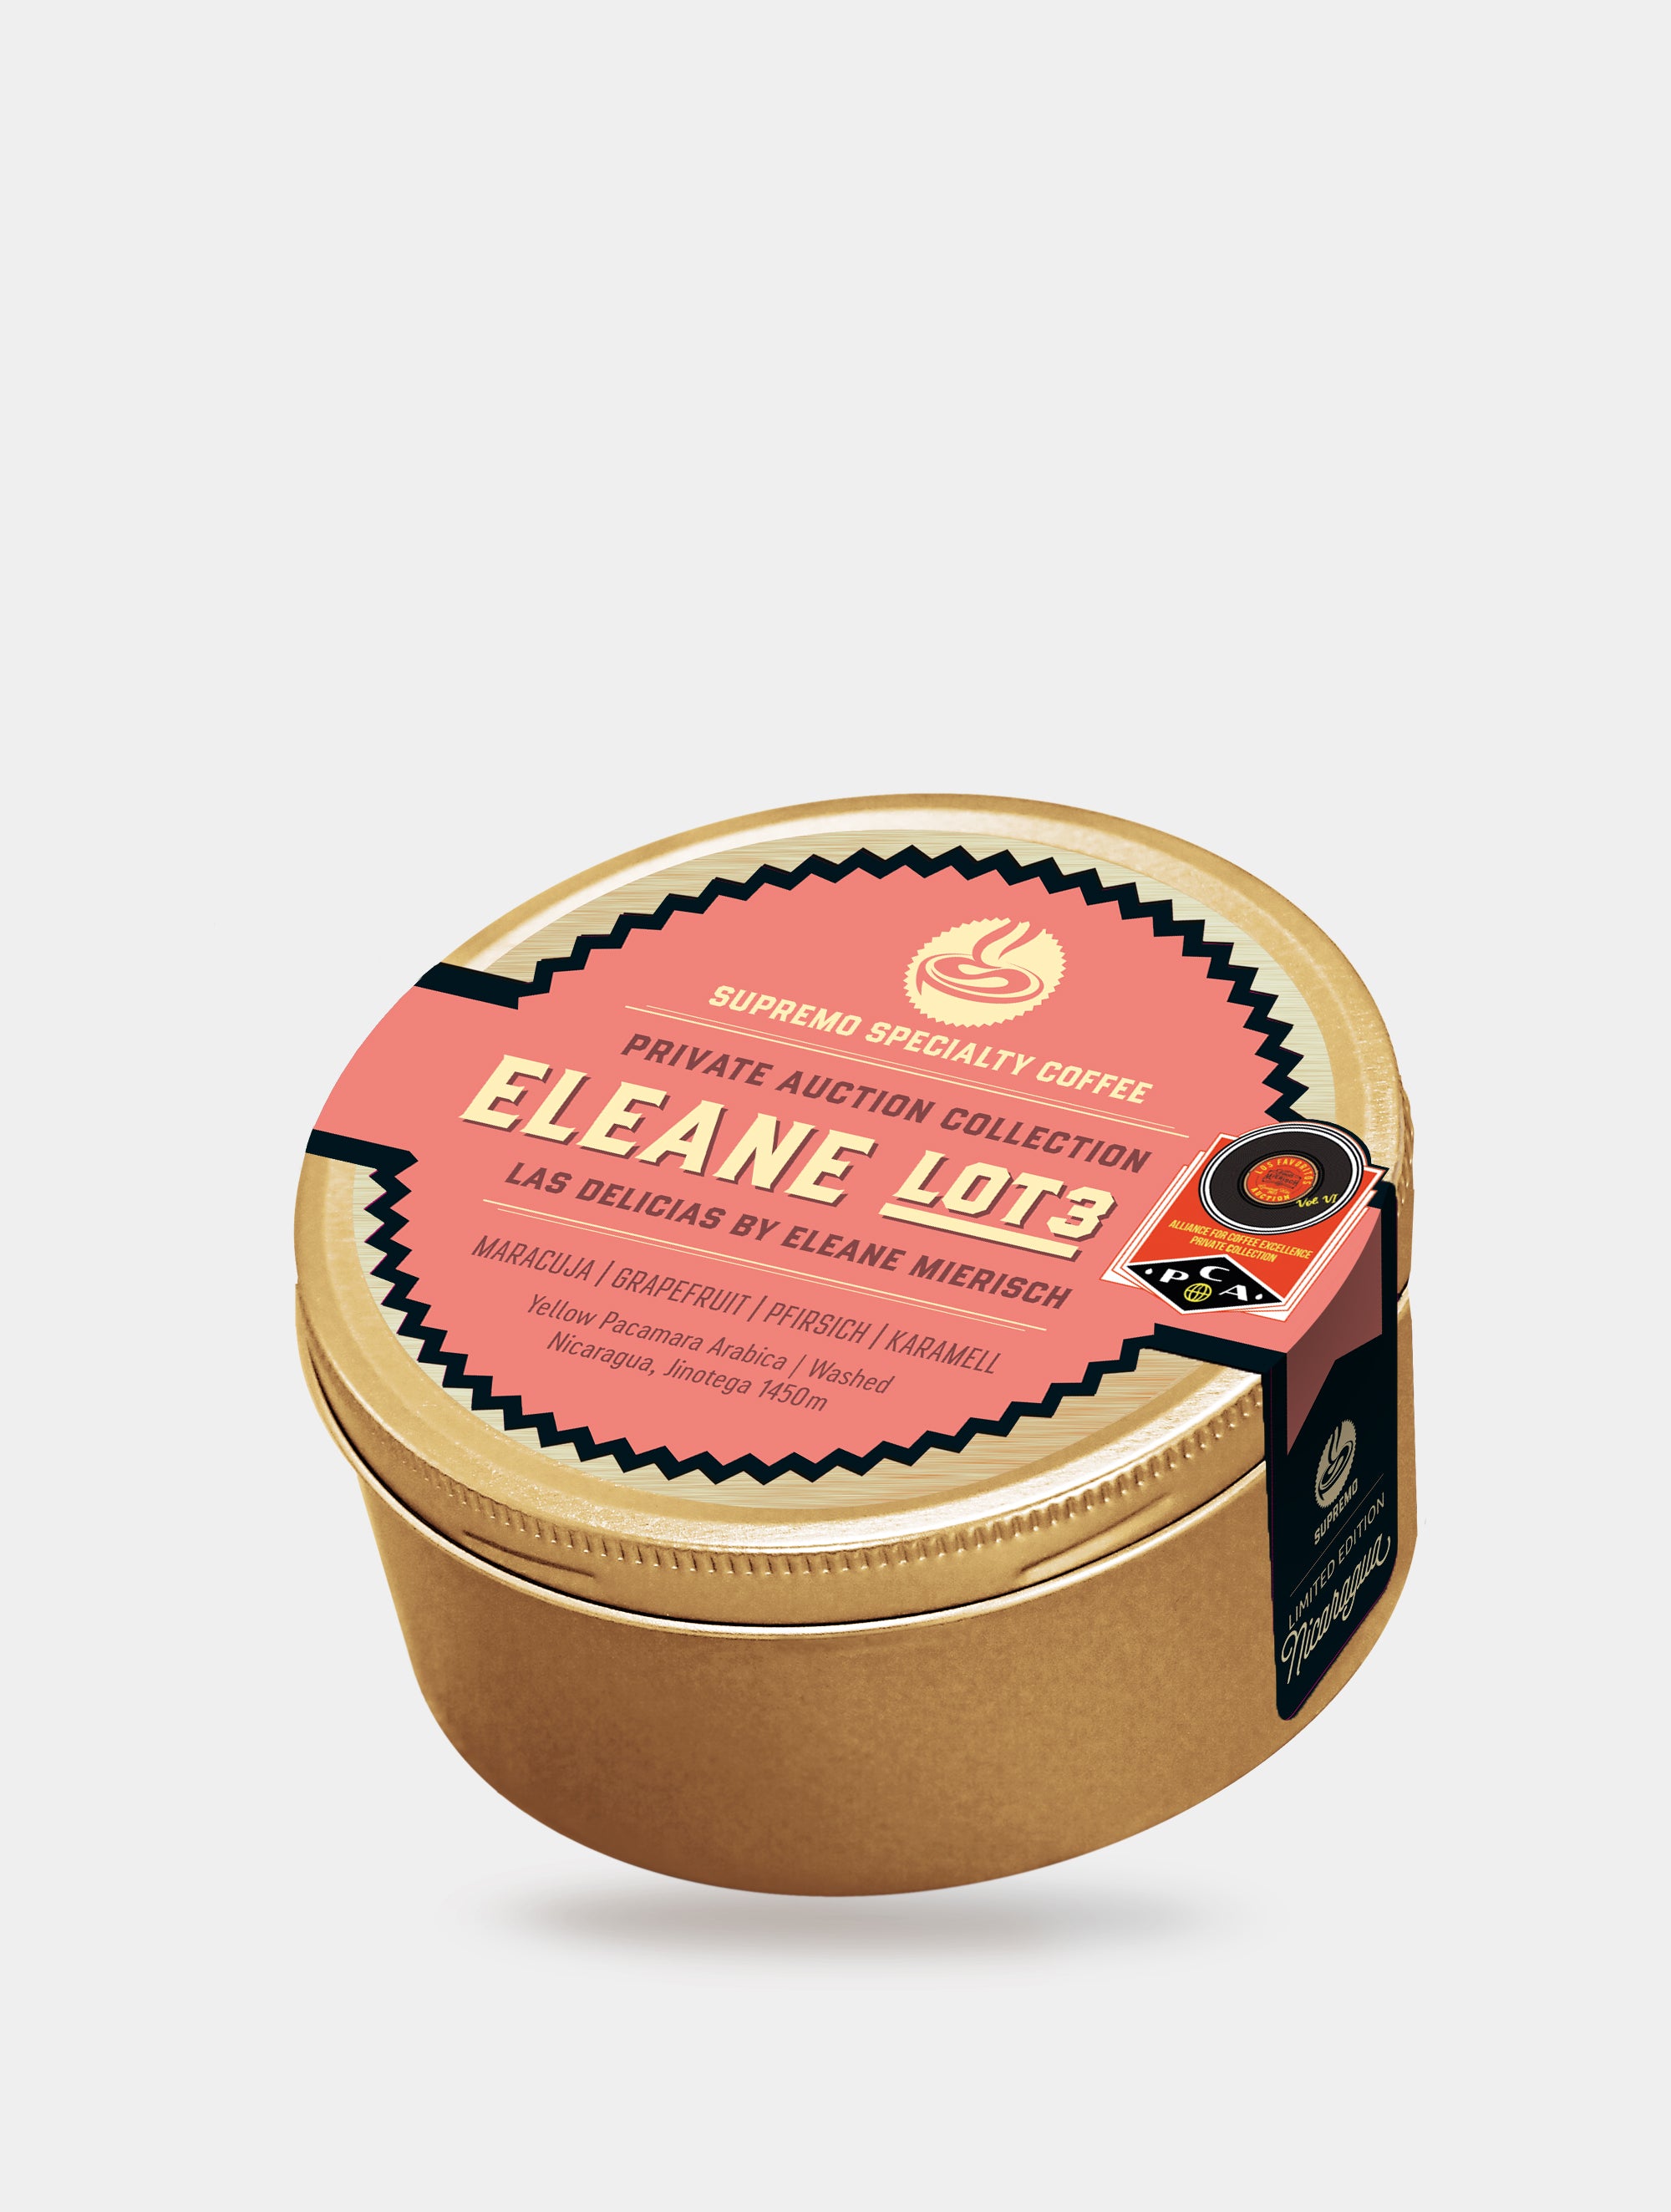 Eleane Lot #3